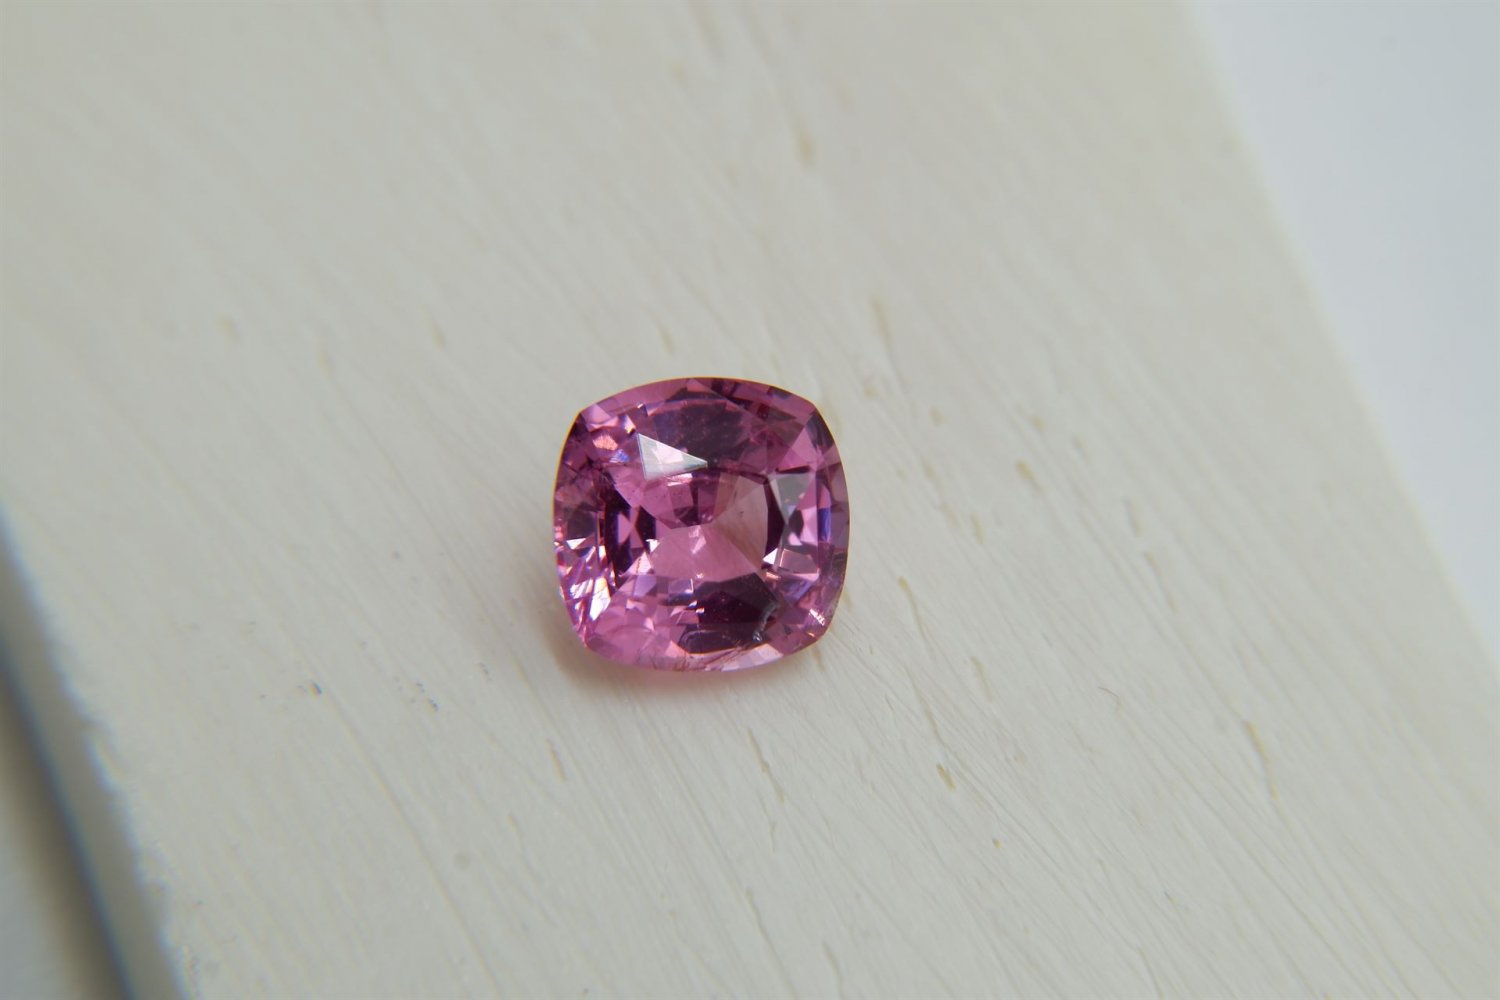 1.736 ct IGL APPRAISED PREMIUM: Vivid Pink Spinel premium handcrafted designer cut, brilliance cushi